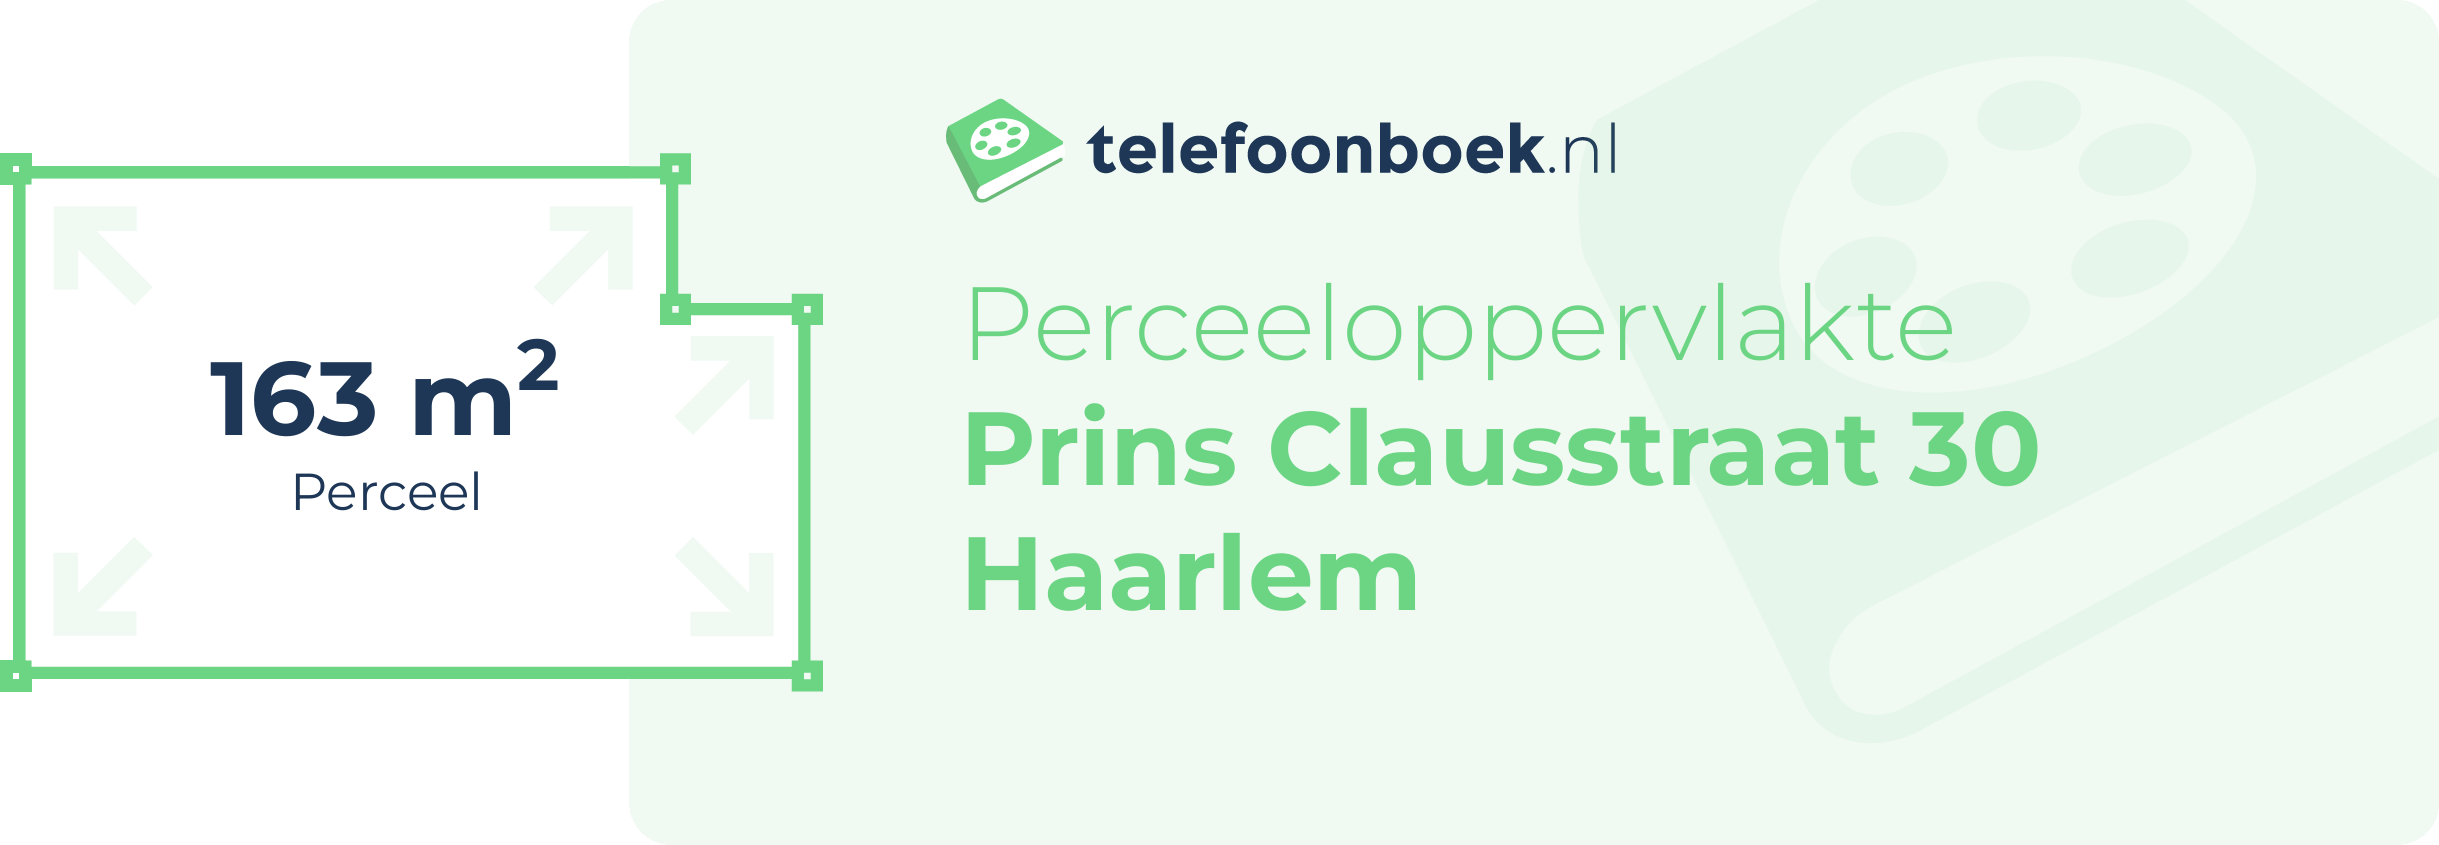 Perceeloppervlakte Prins Clausstraat 30 Haarlem